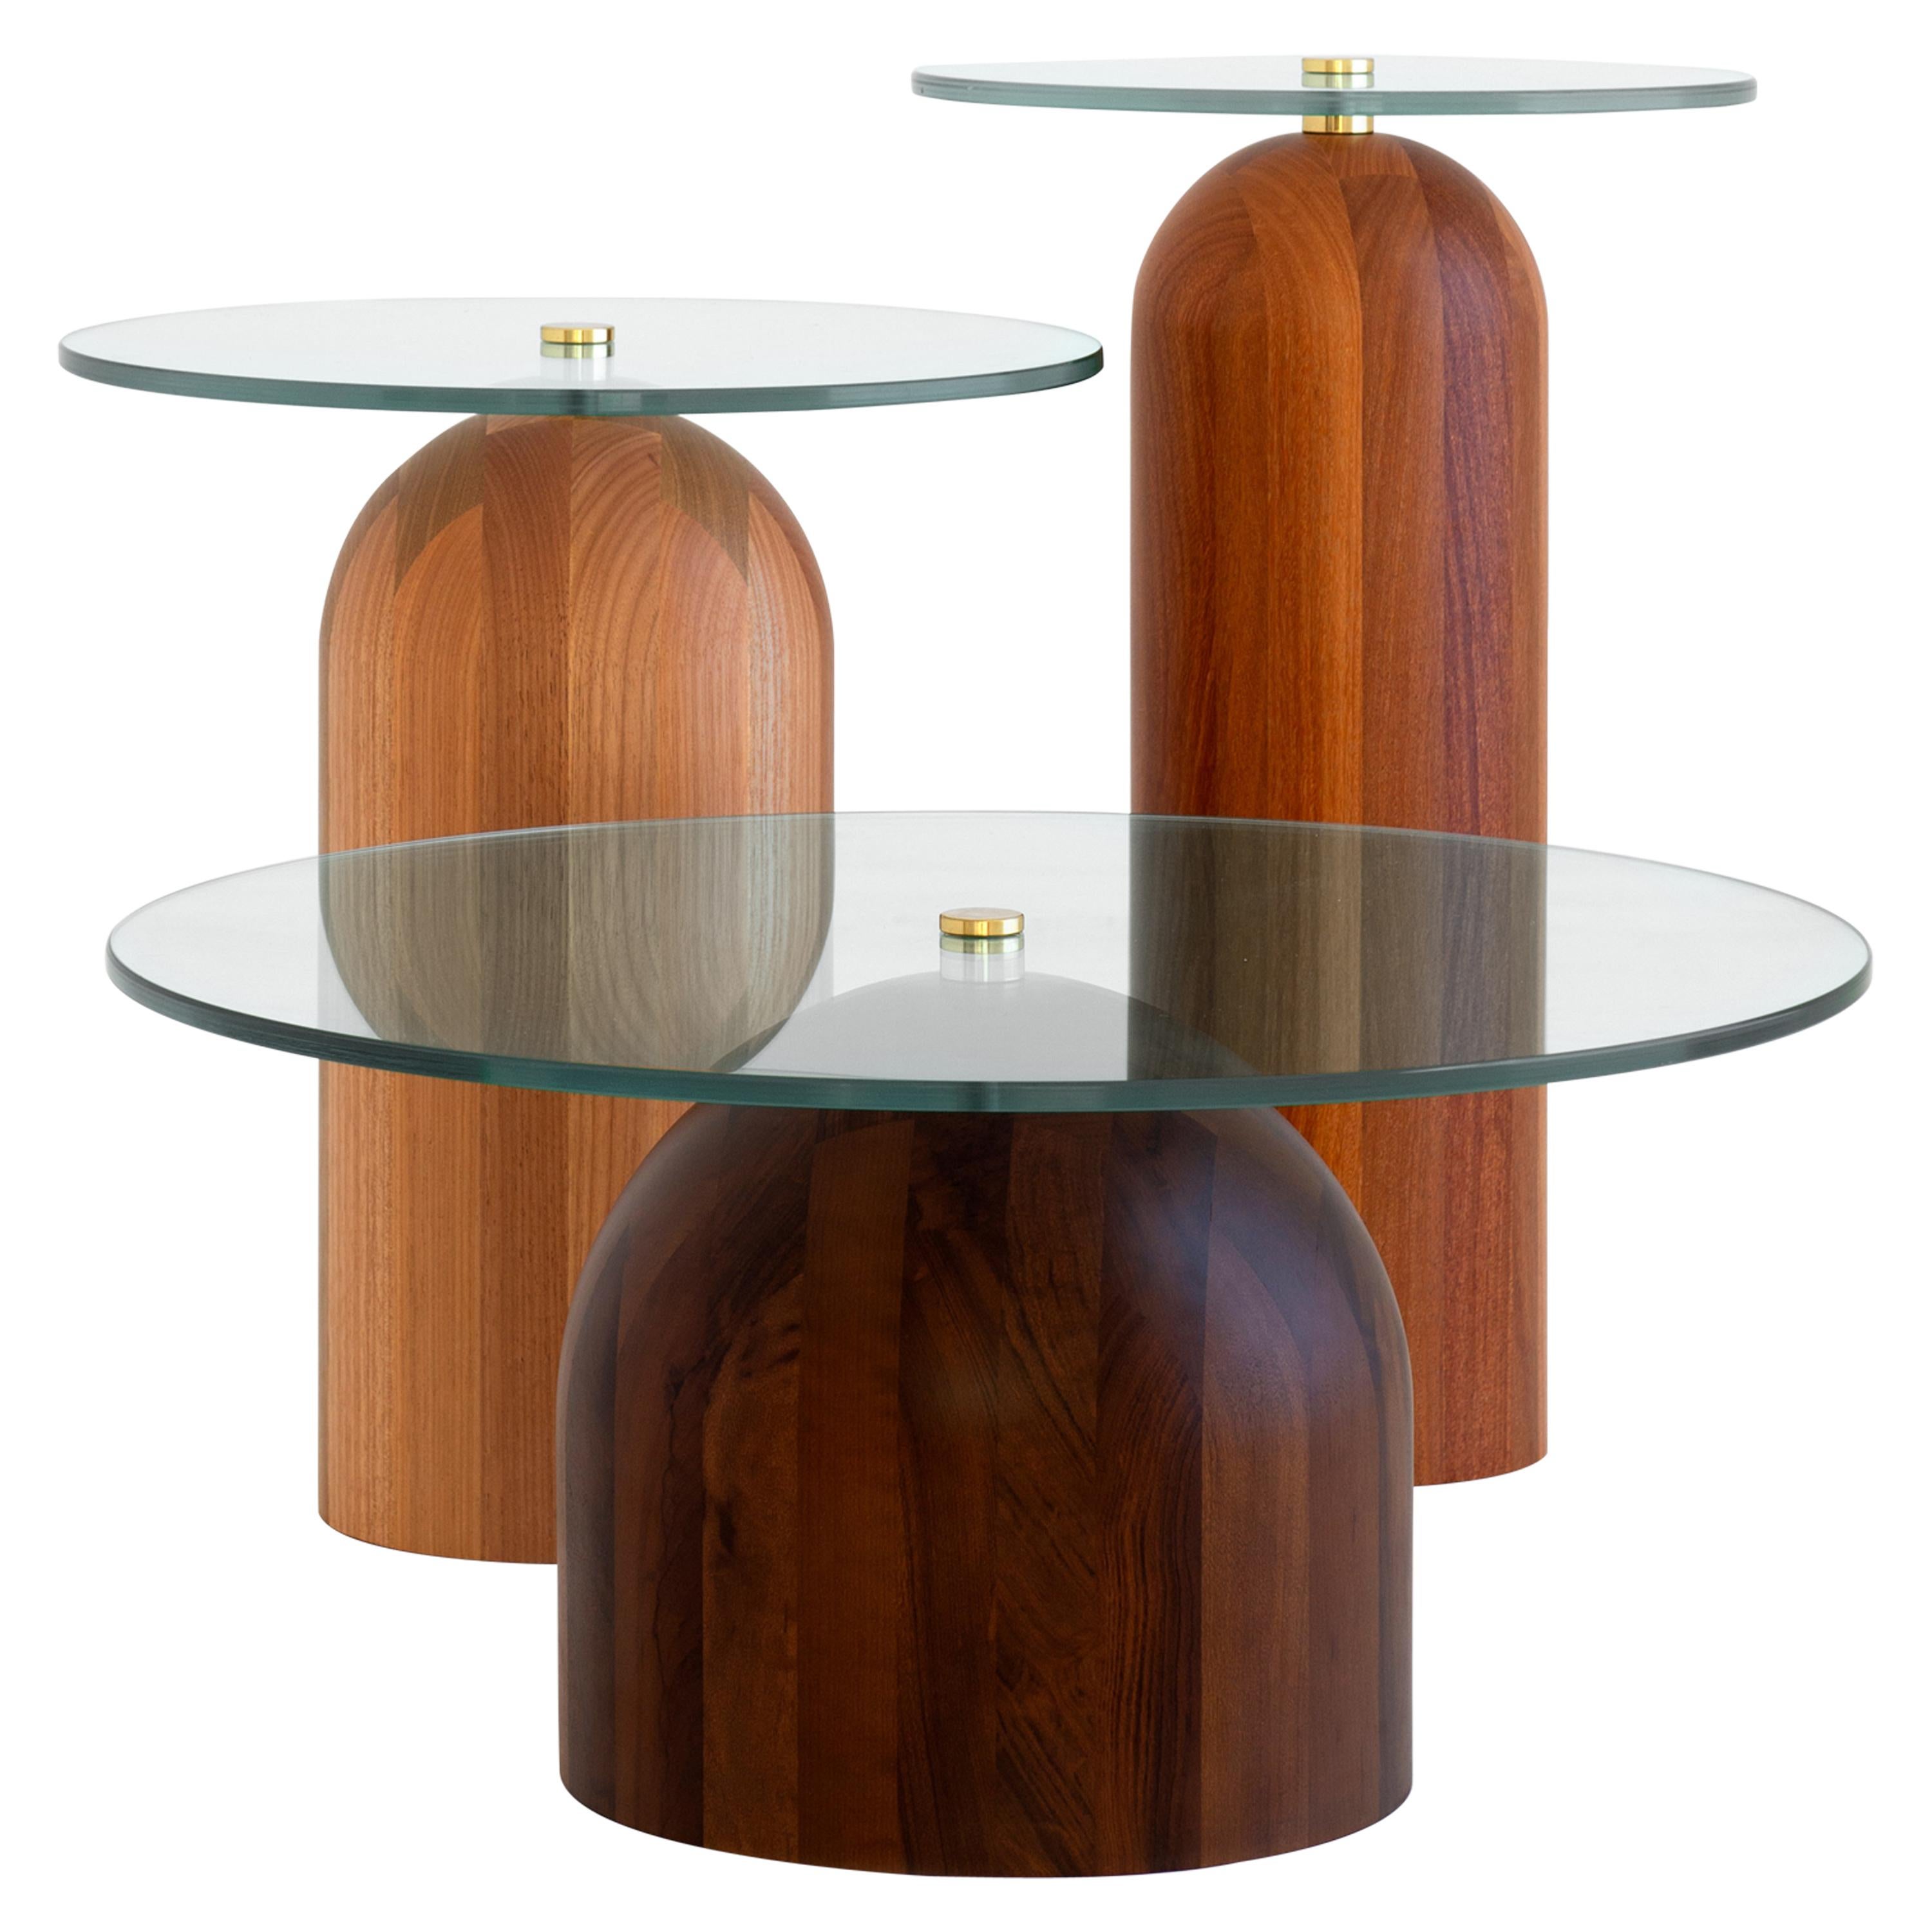 Trio of Side Tables, Leandro Garcia, Contemporary Brazil Design